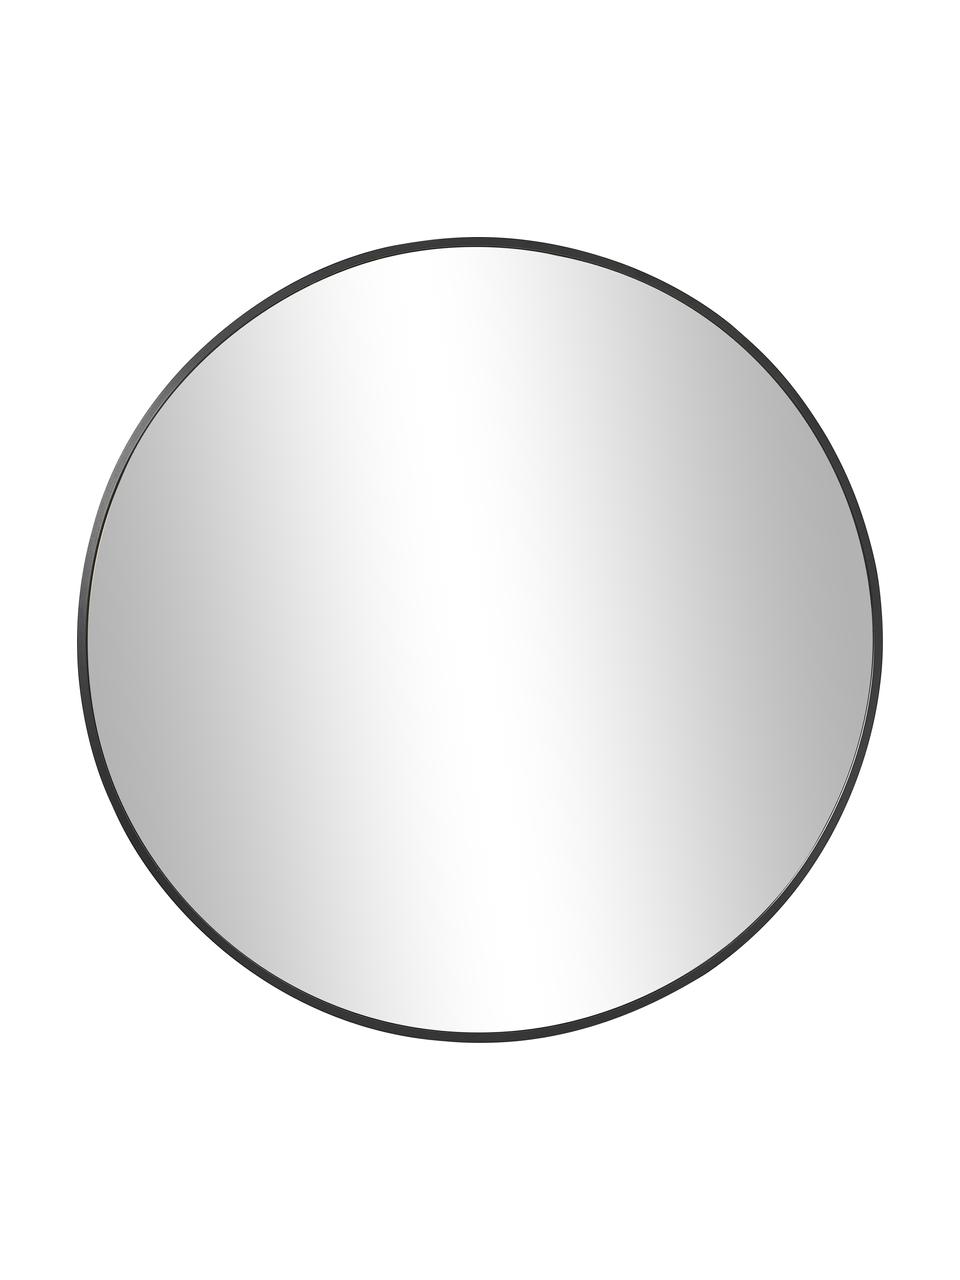 Okrągłe lustro ścienne z metalową ramą Ida, Czarny, Ø 55 cm